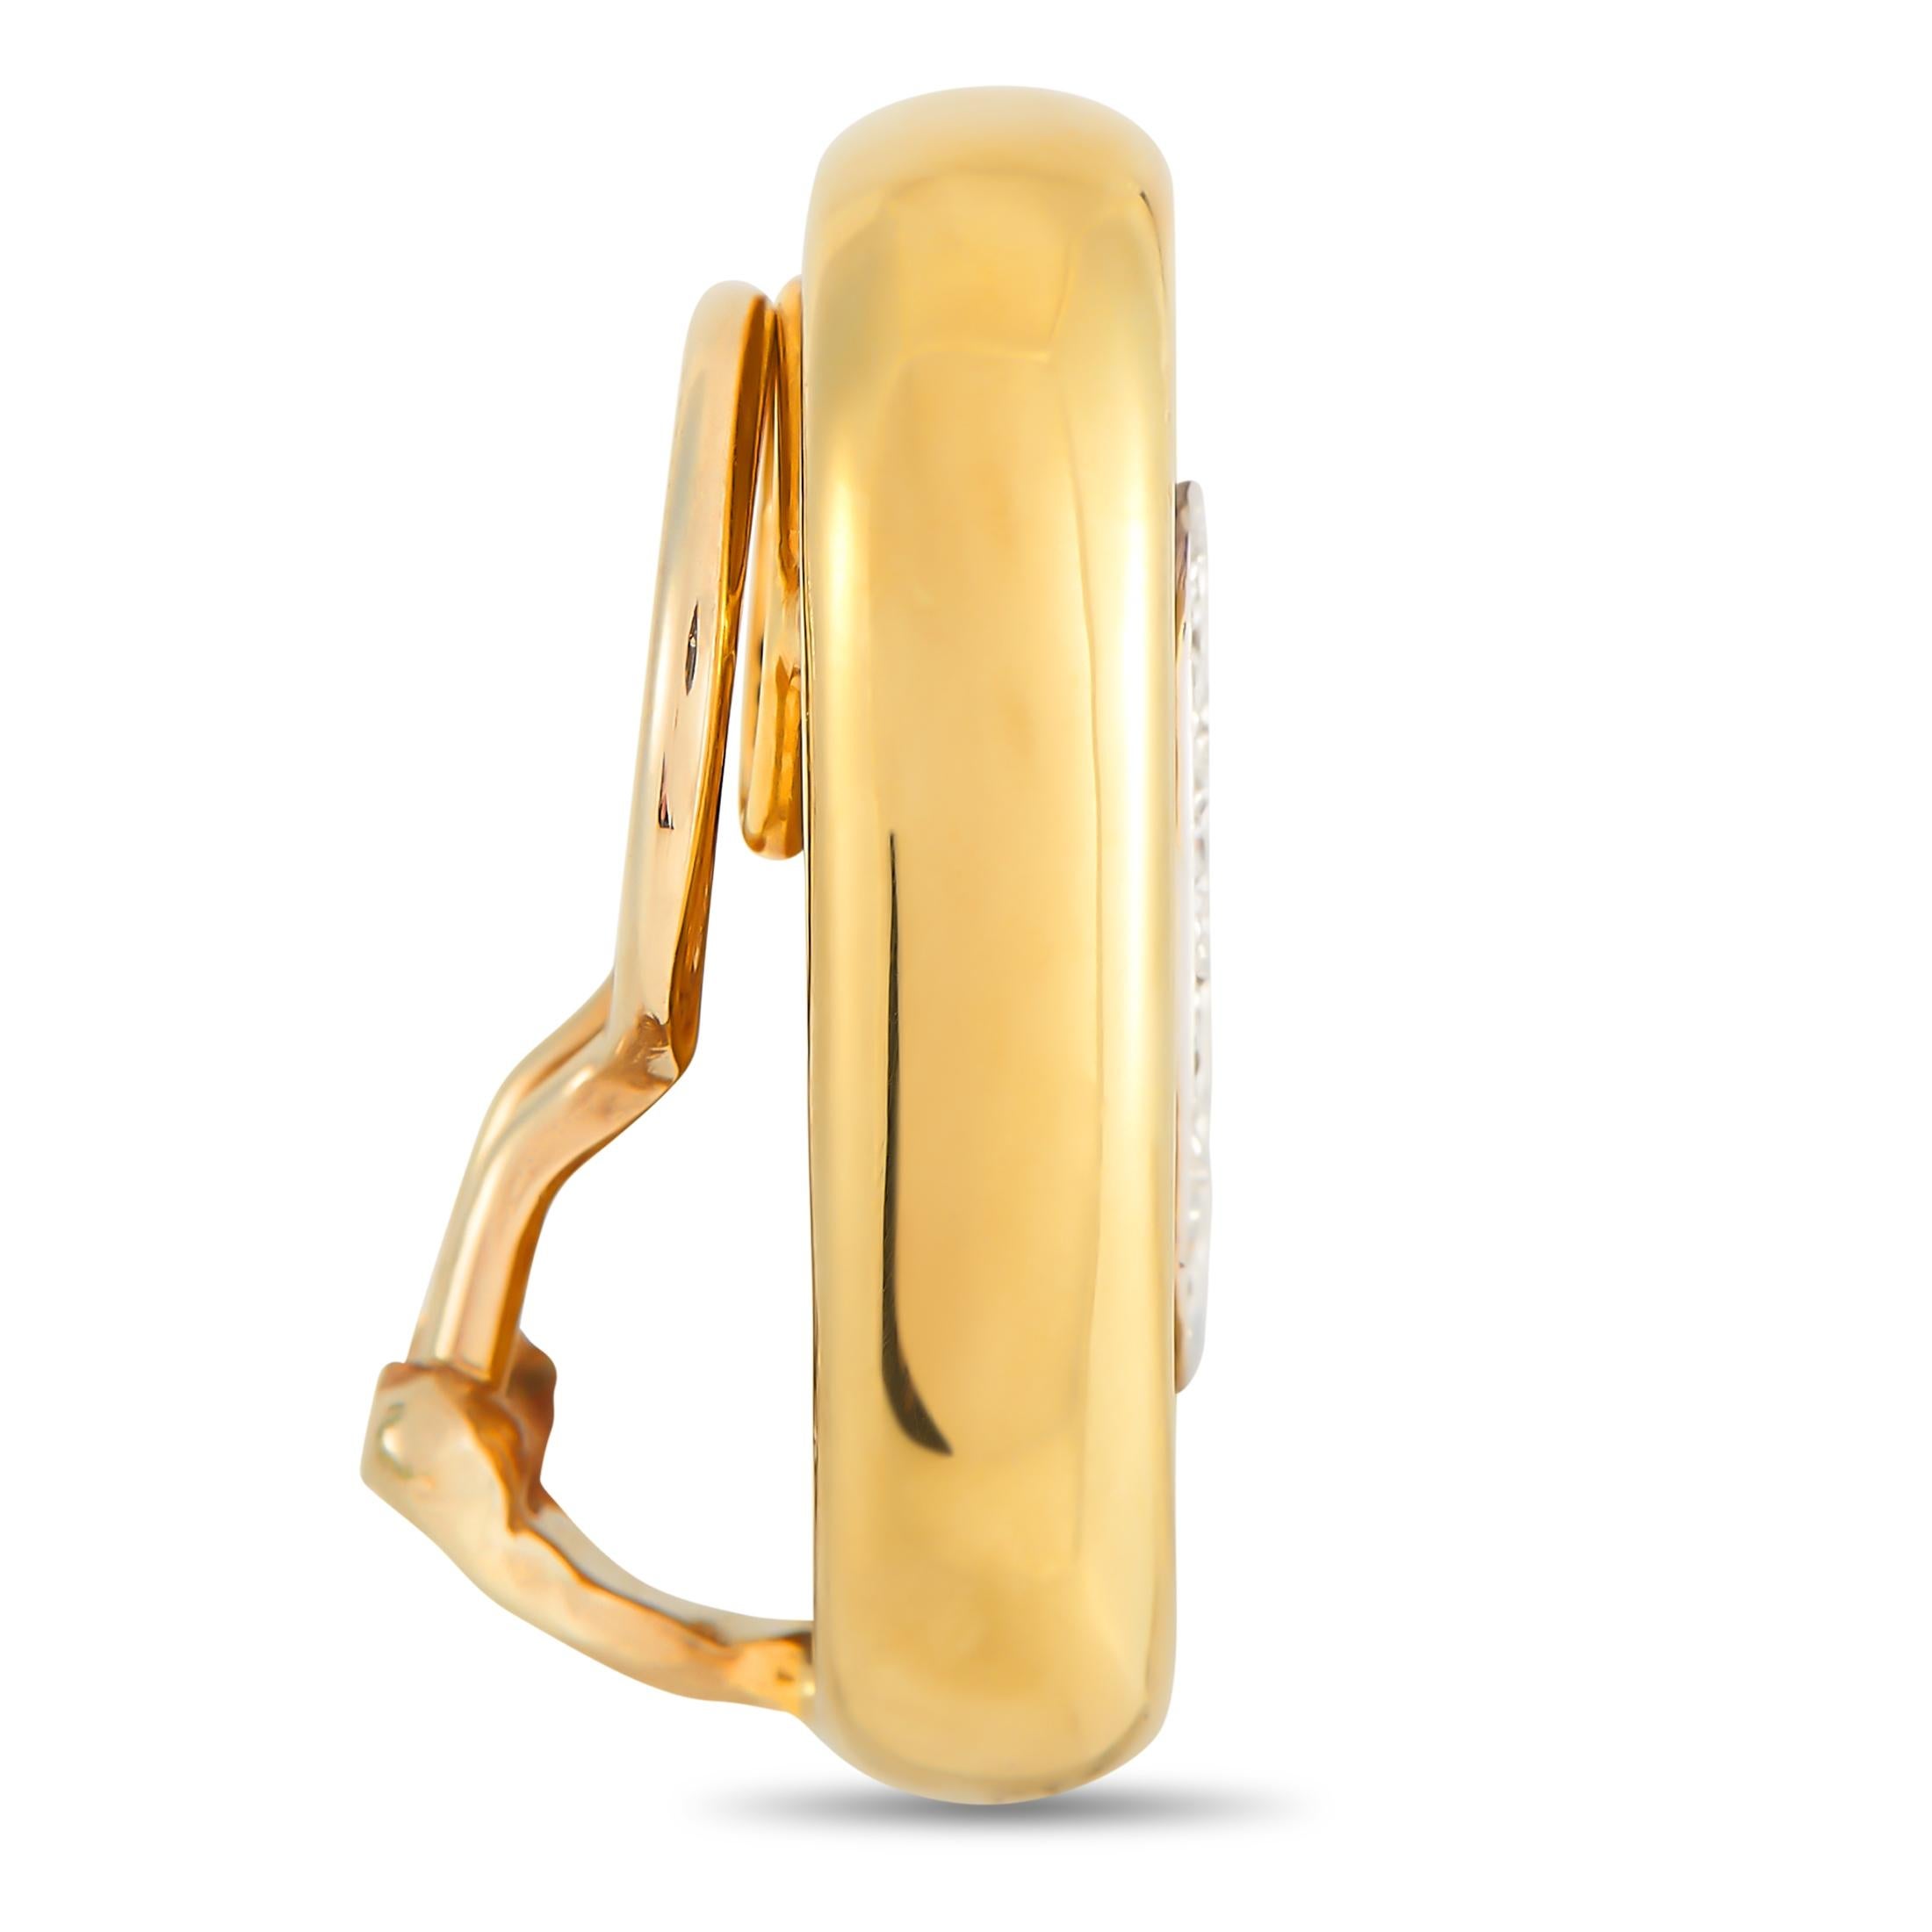 Die stilvolle ovale Fassung aus 18 Karat Gelbgold mit einer Länge von 0,94 cm und einer Breite von 0,57 cm macht diese eleganten Ohrringe unglaublich opulent. In der Mitte wird jedes Stück von einem tiefblauen Emaille-Akzent sowie einer Reihe von 4